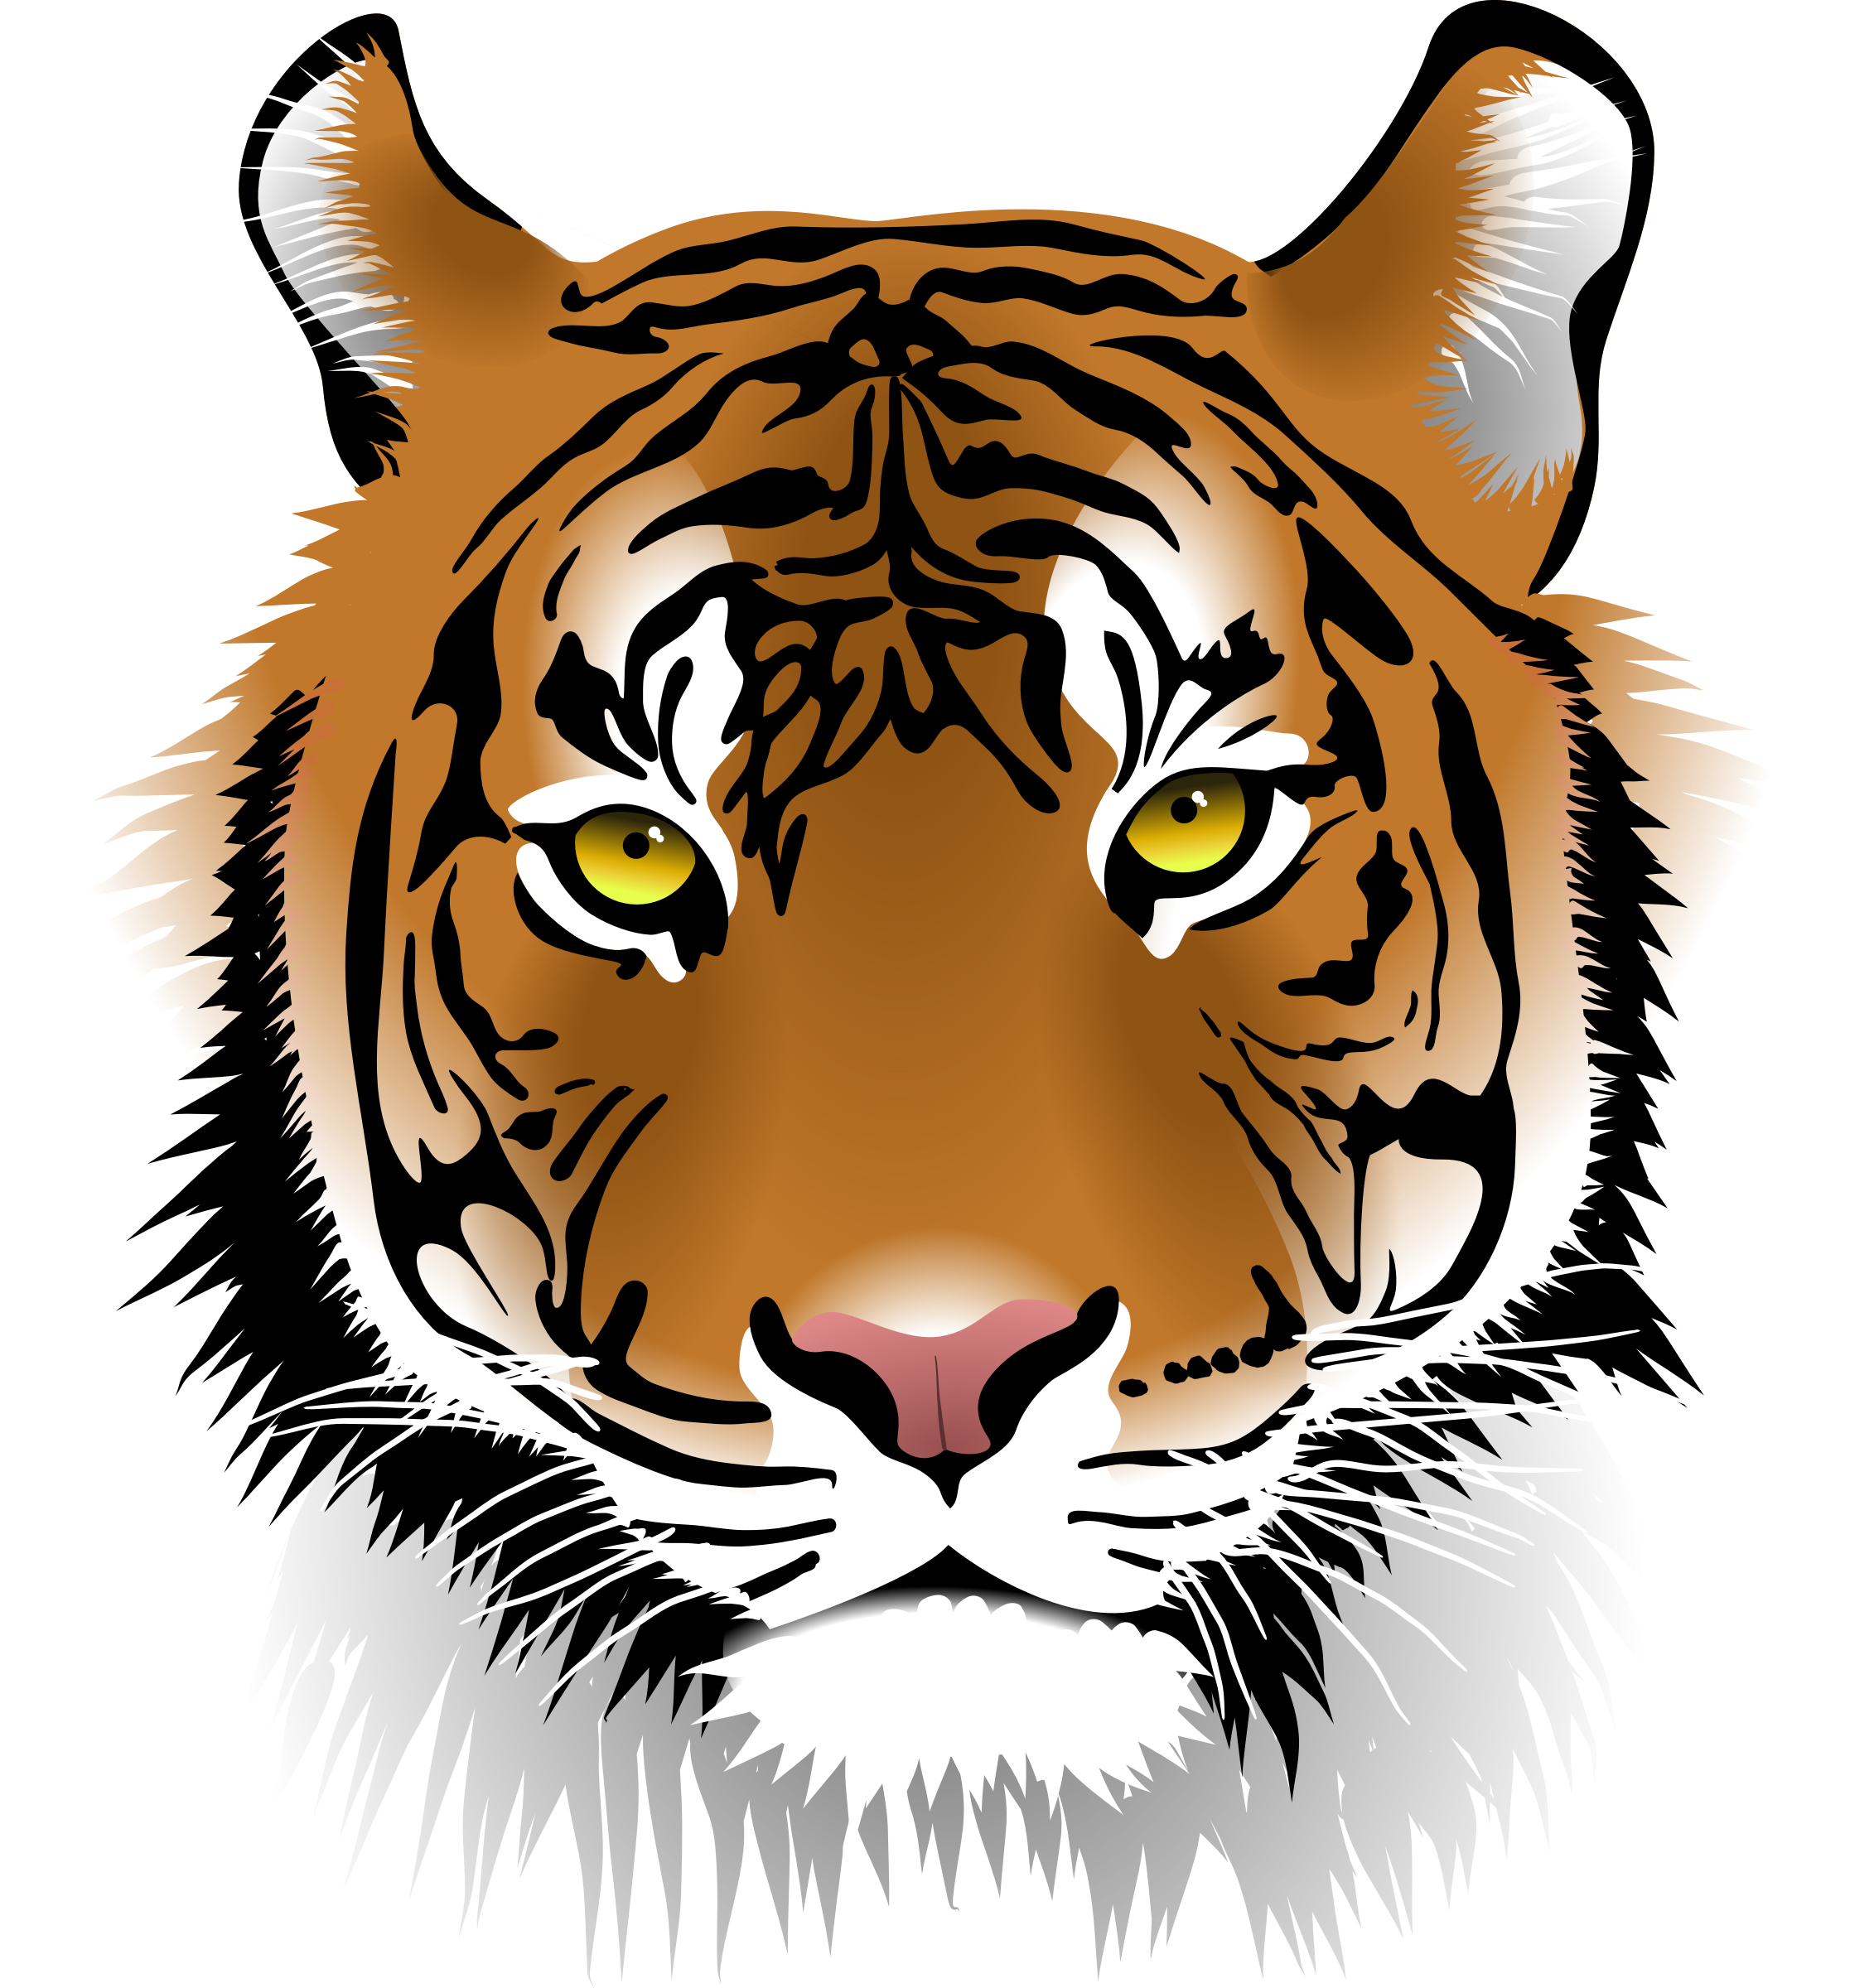 Рисунки в формате jpg. Голова тигра. Лицо тигра. Морда тигра. Тигр рисунок.